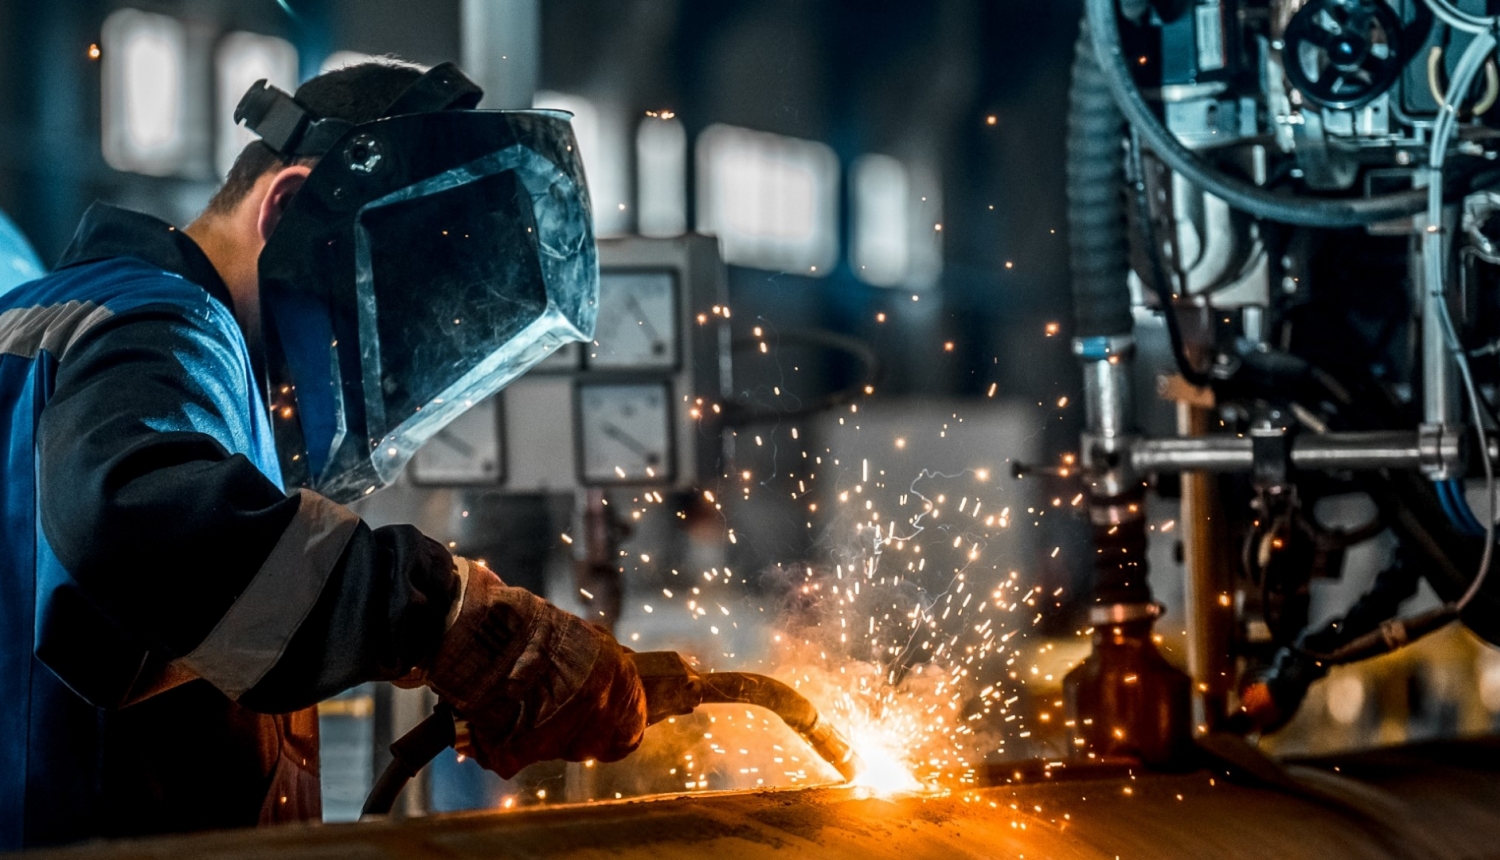 2610 vebinārs karjeras atbalsta speciālistiem par mašīnbūves un metālapstrādes nozari